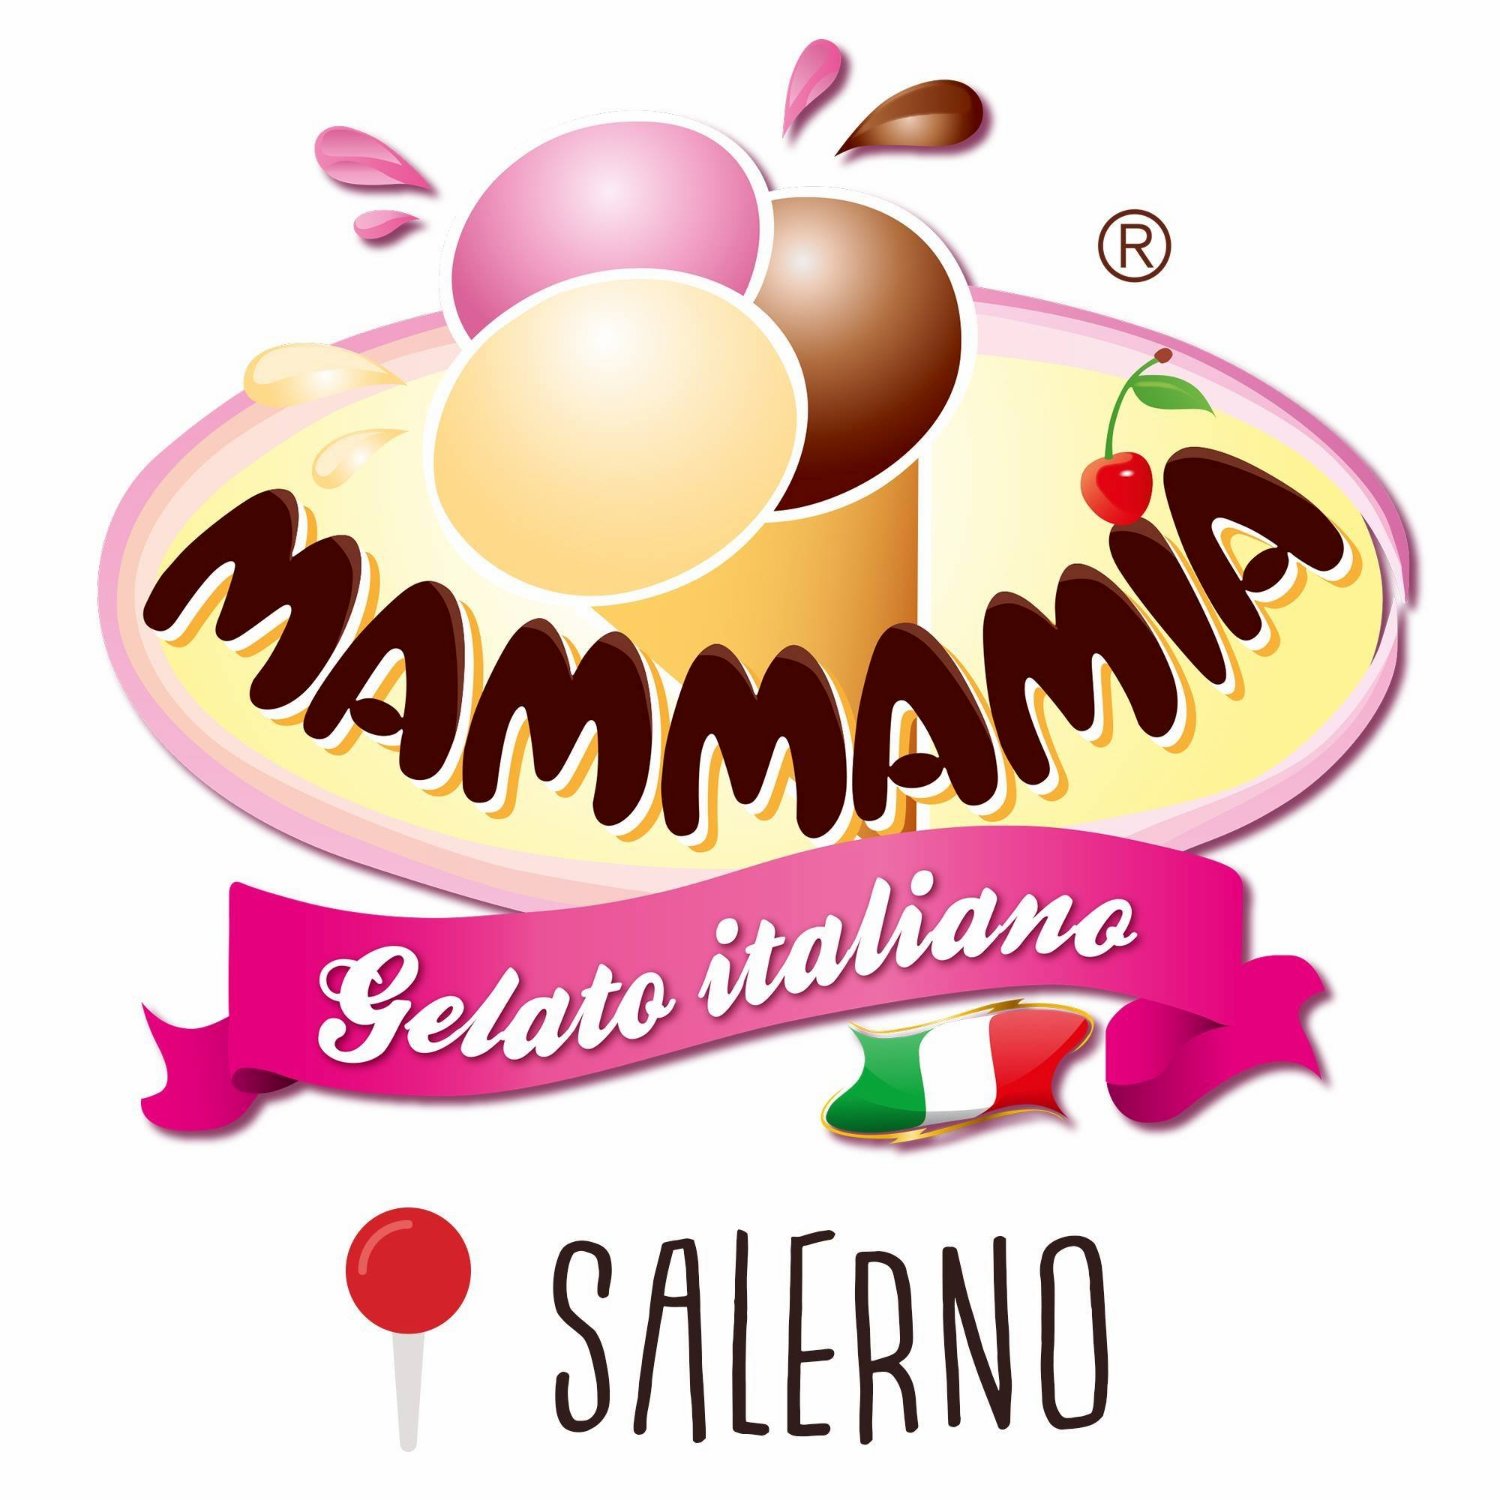 Mammamia Gelato Italiano, Salerno